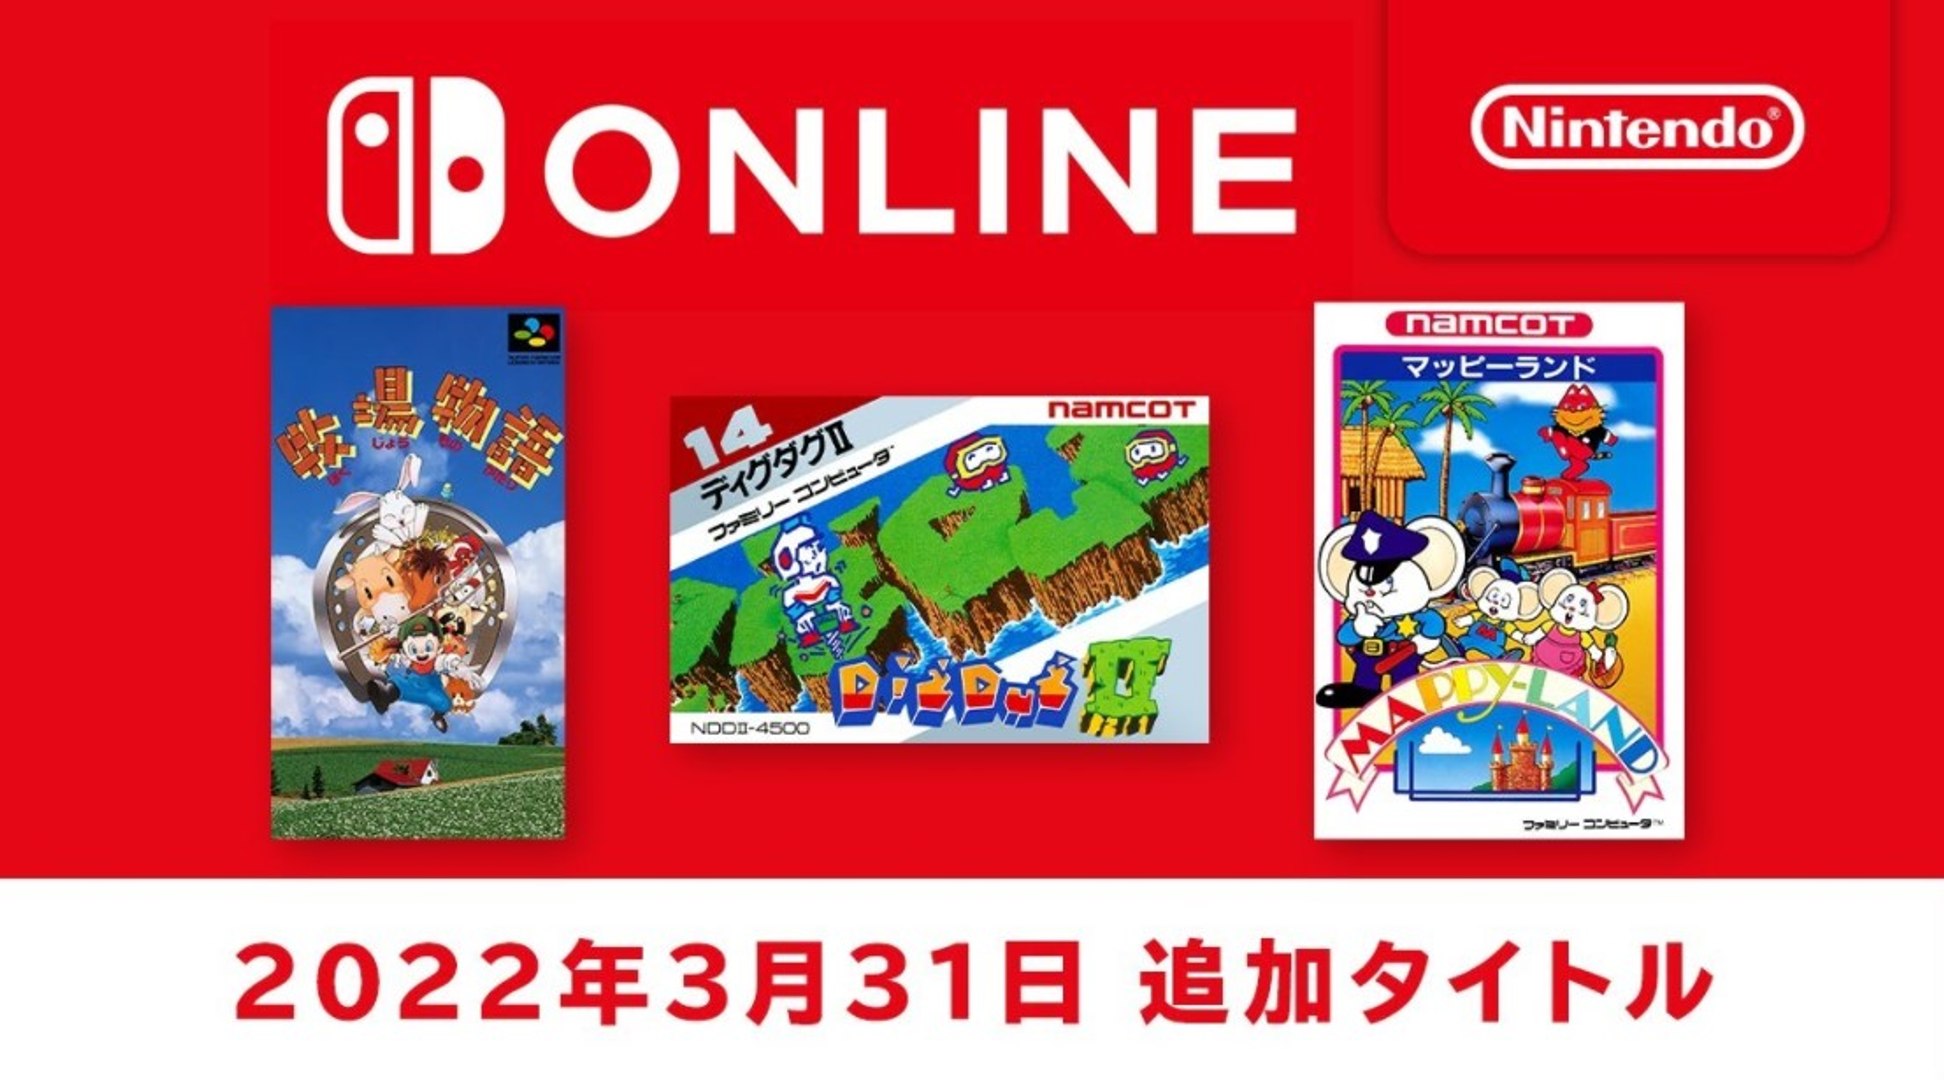 Nintendo Switch Online: juegos clásicos de Famicom y Super Famicom - Marzo  2022 - Vídeo Dailymotion